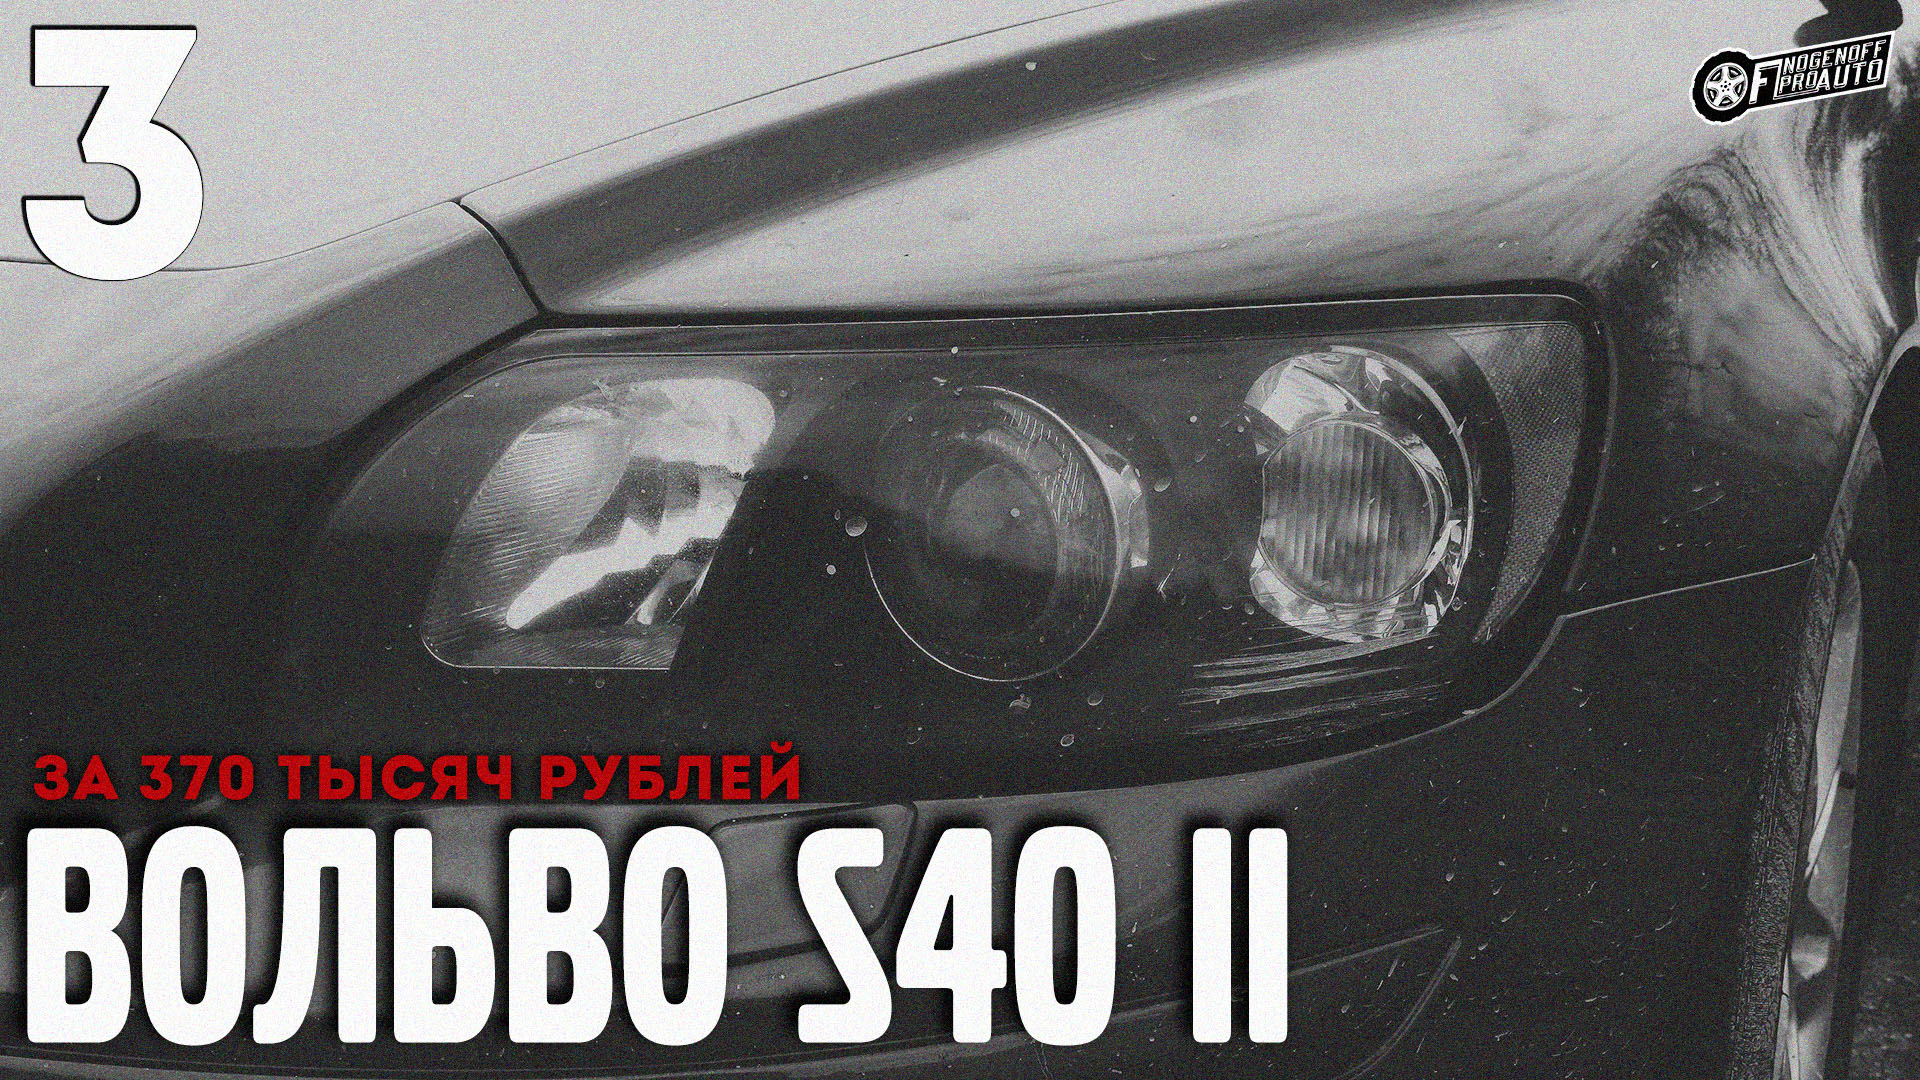 Влетел в яму на скорости!/Volvo S40 II за 370K #3